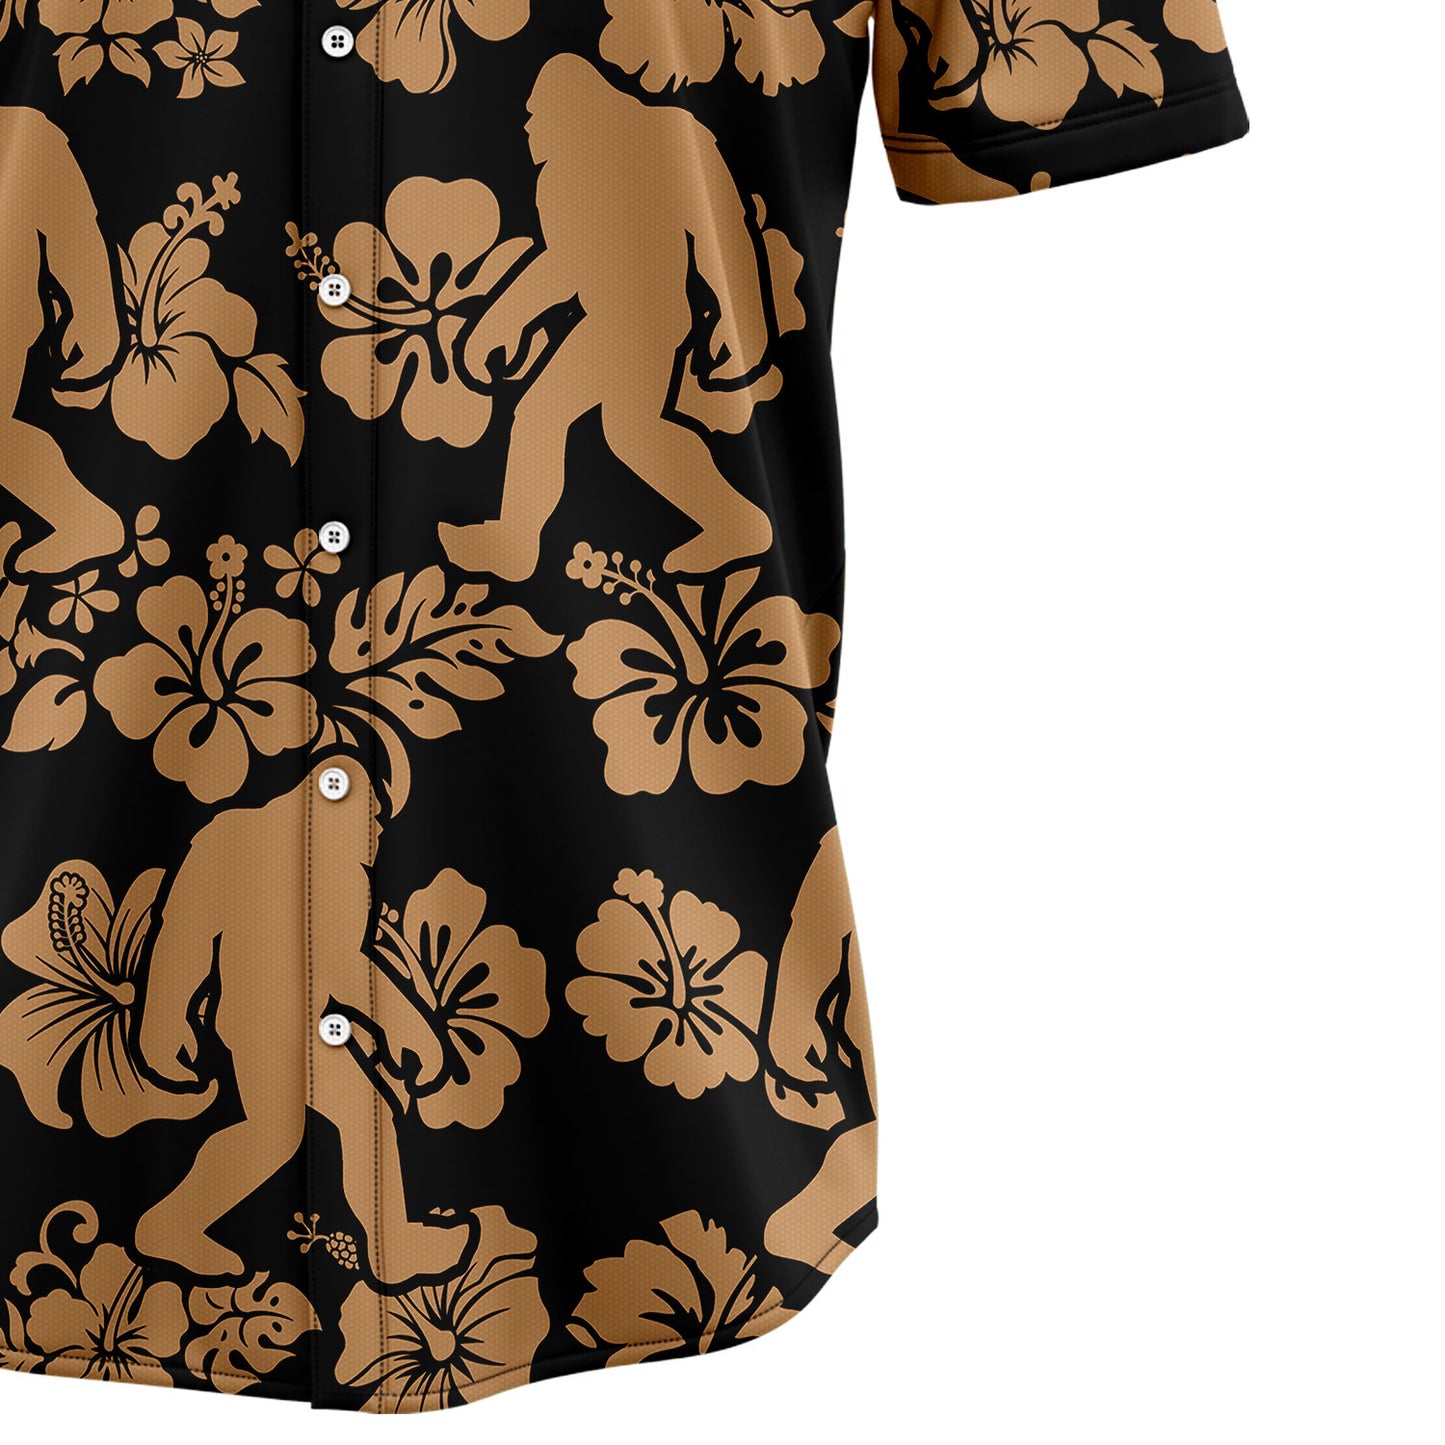 Bigfoot Believe TY2807 Hawaiian Shirt